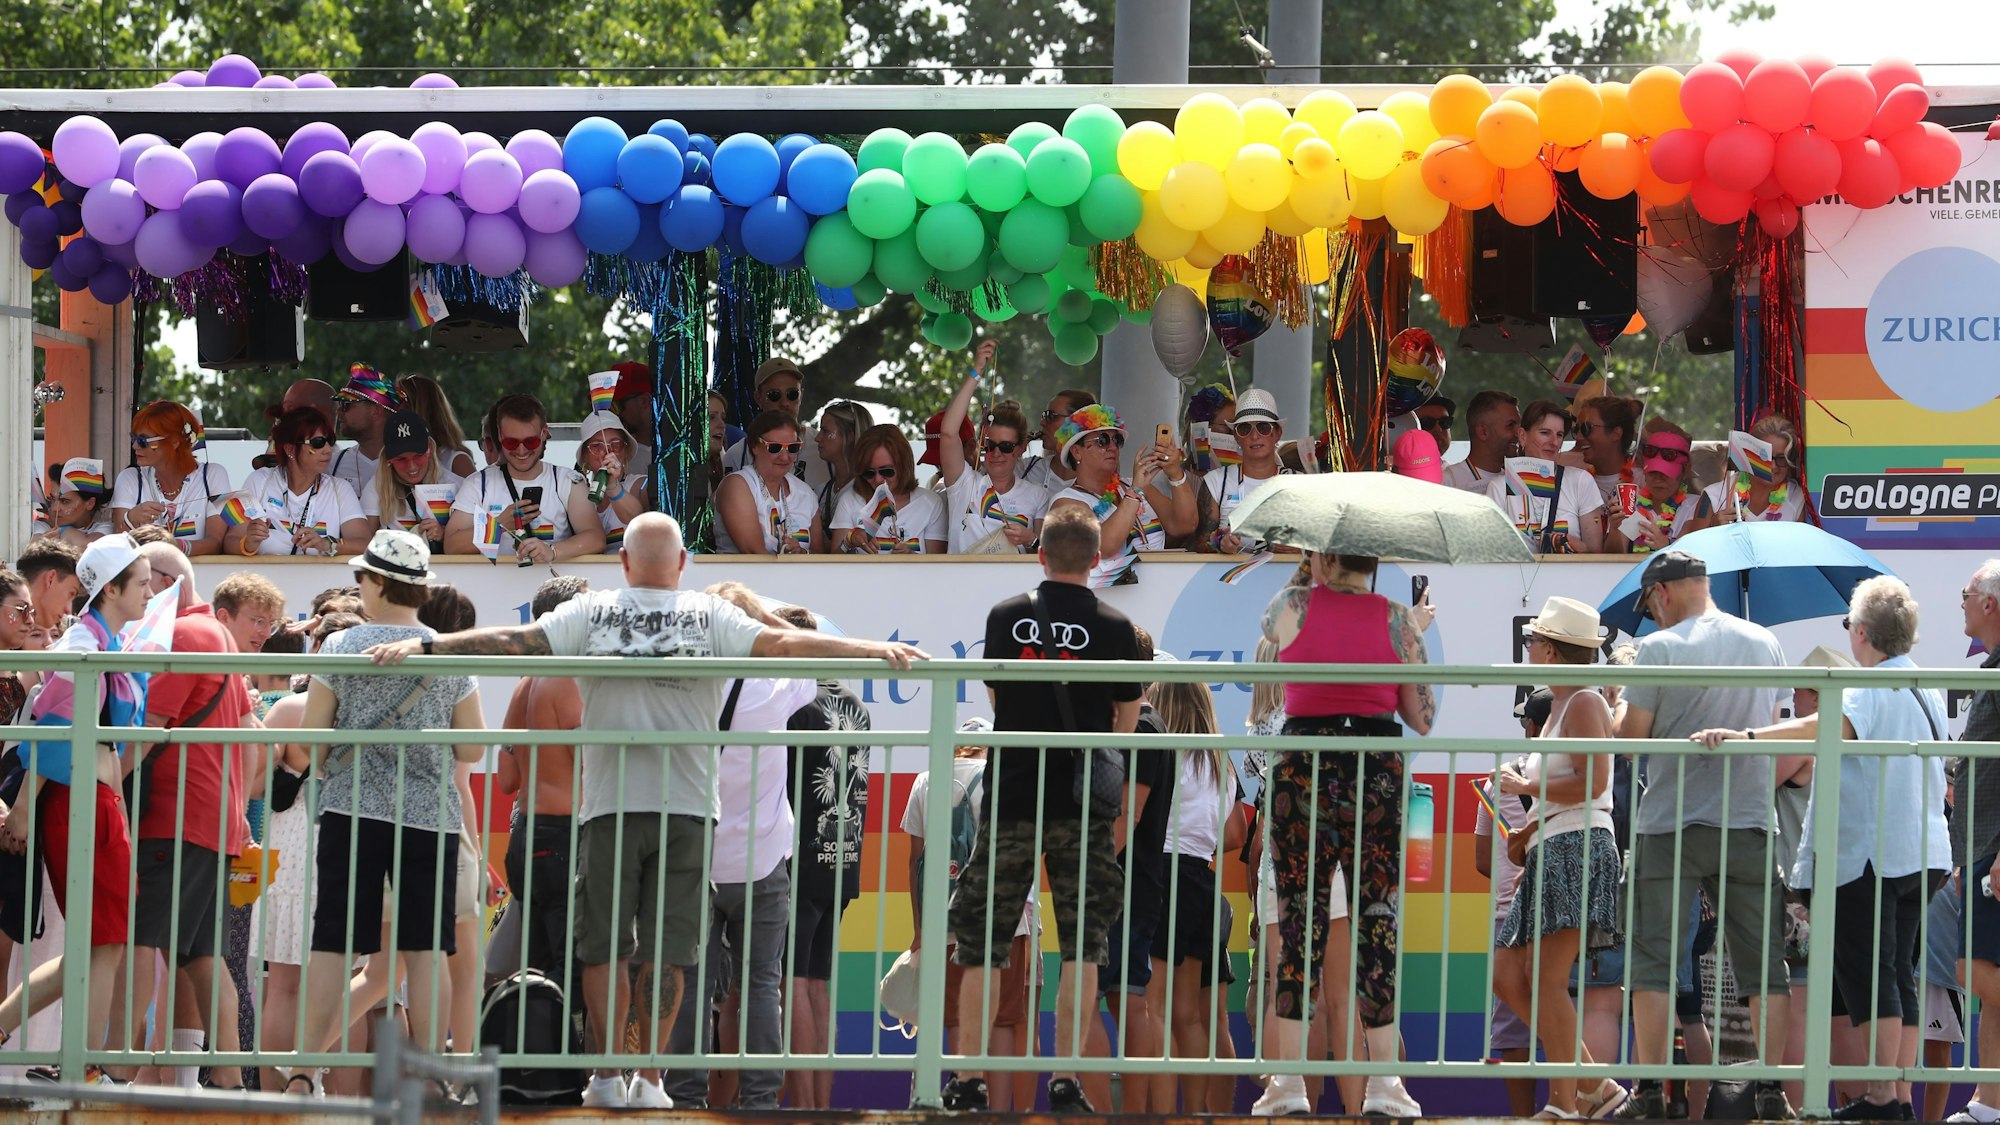 Ein Paradewagen mit bunten Luftballons in den Regenbogen-Farben